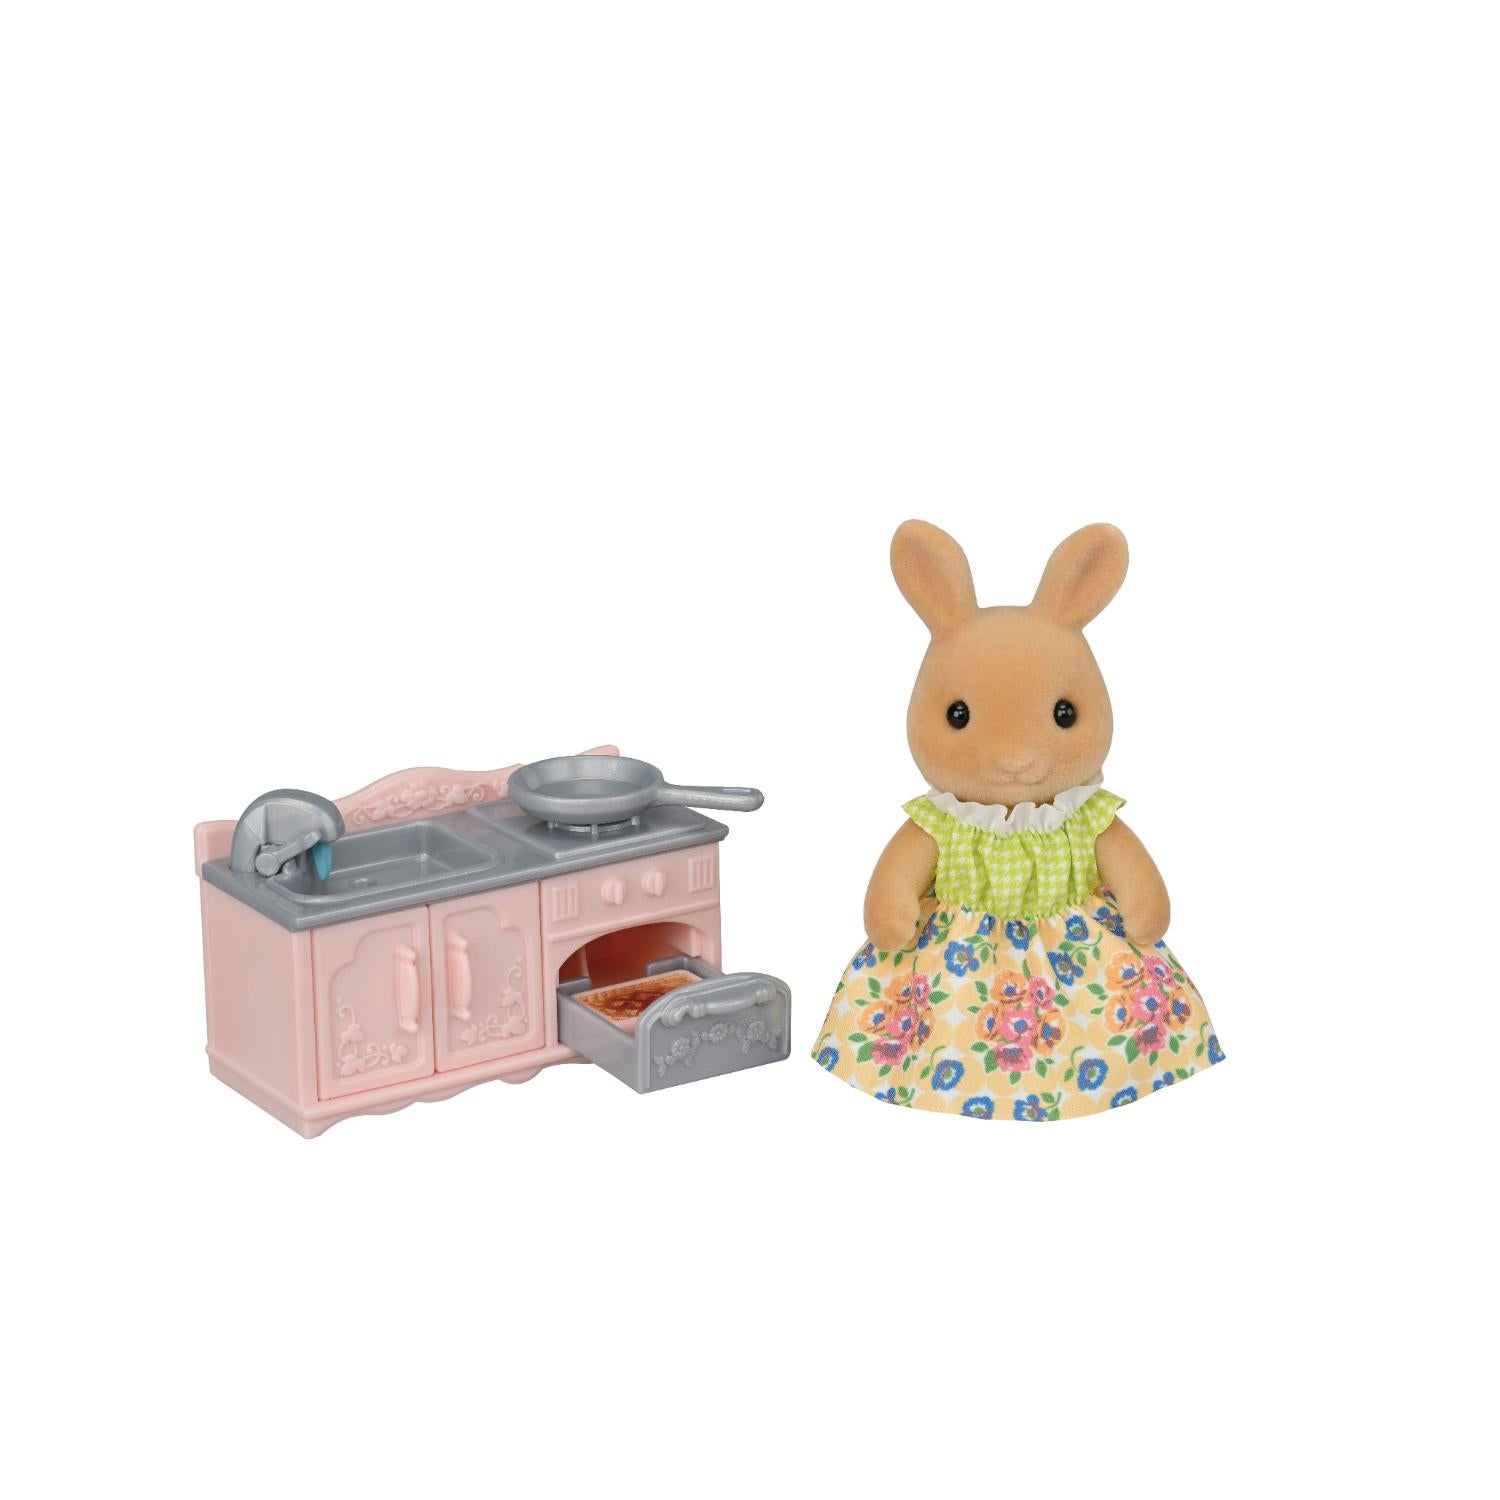 Mother Rabbit Sun kitchen set